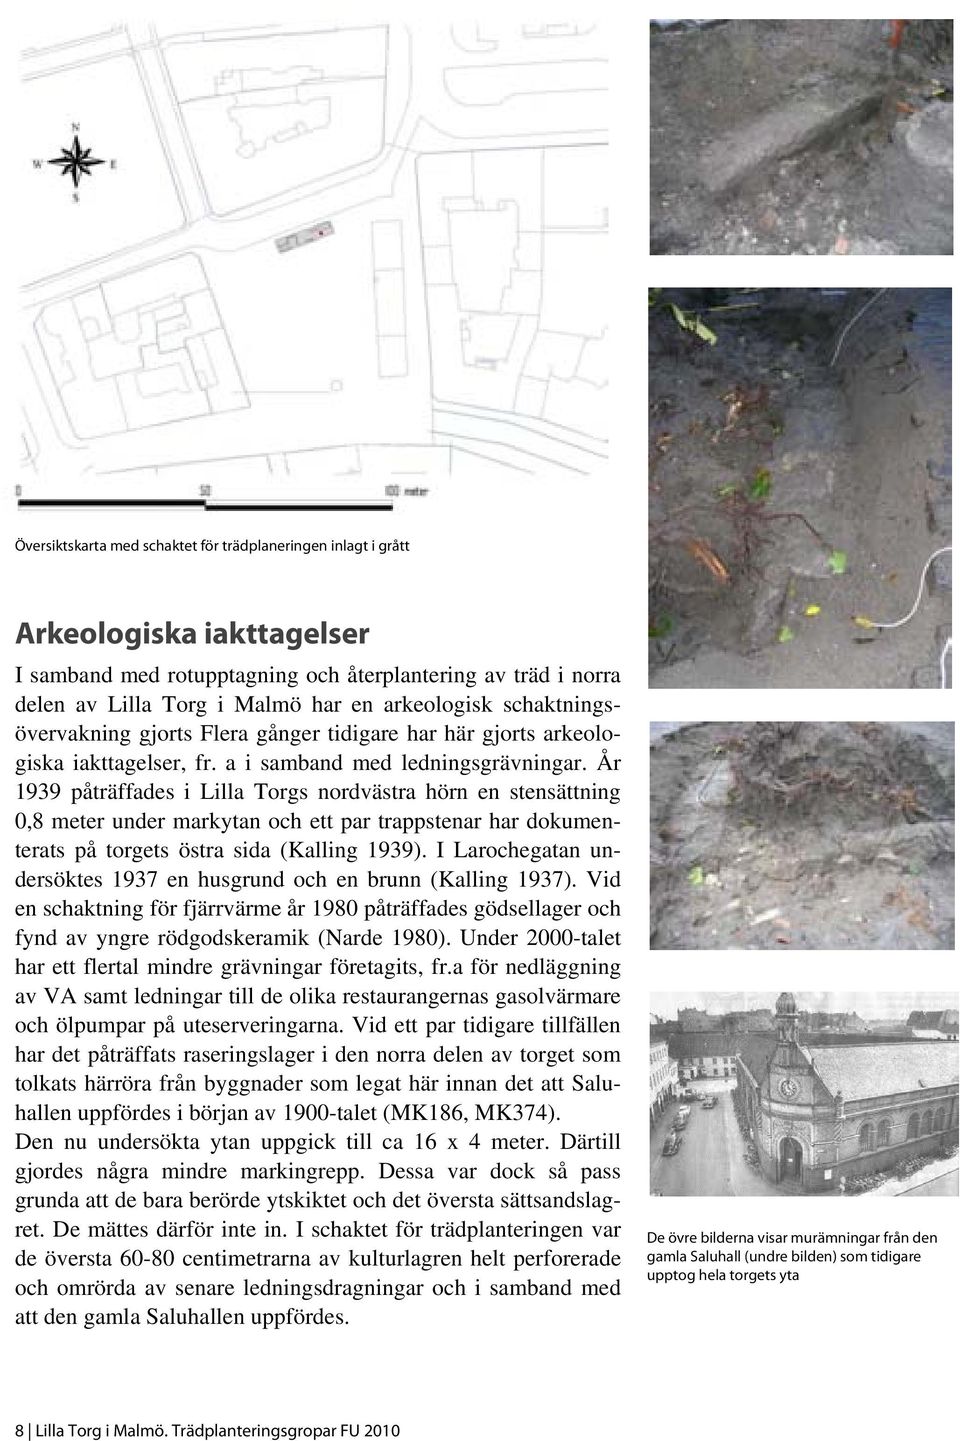 År 1939 påträffades i Lilla Torgs nordvästra hörn en stensättning 0,8 meter under markytan och ett par trappstenar har dokumenterats på torgets östra sida (Kalling 1939).